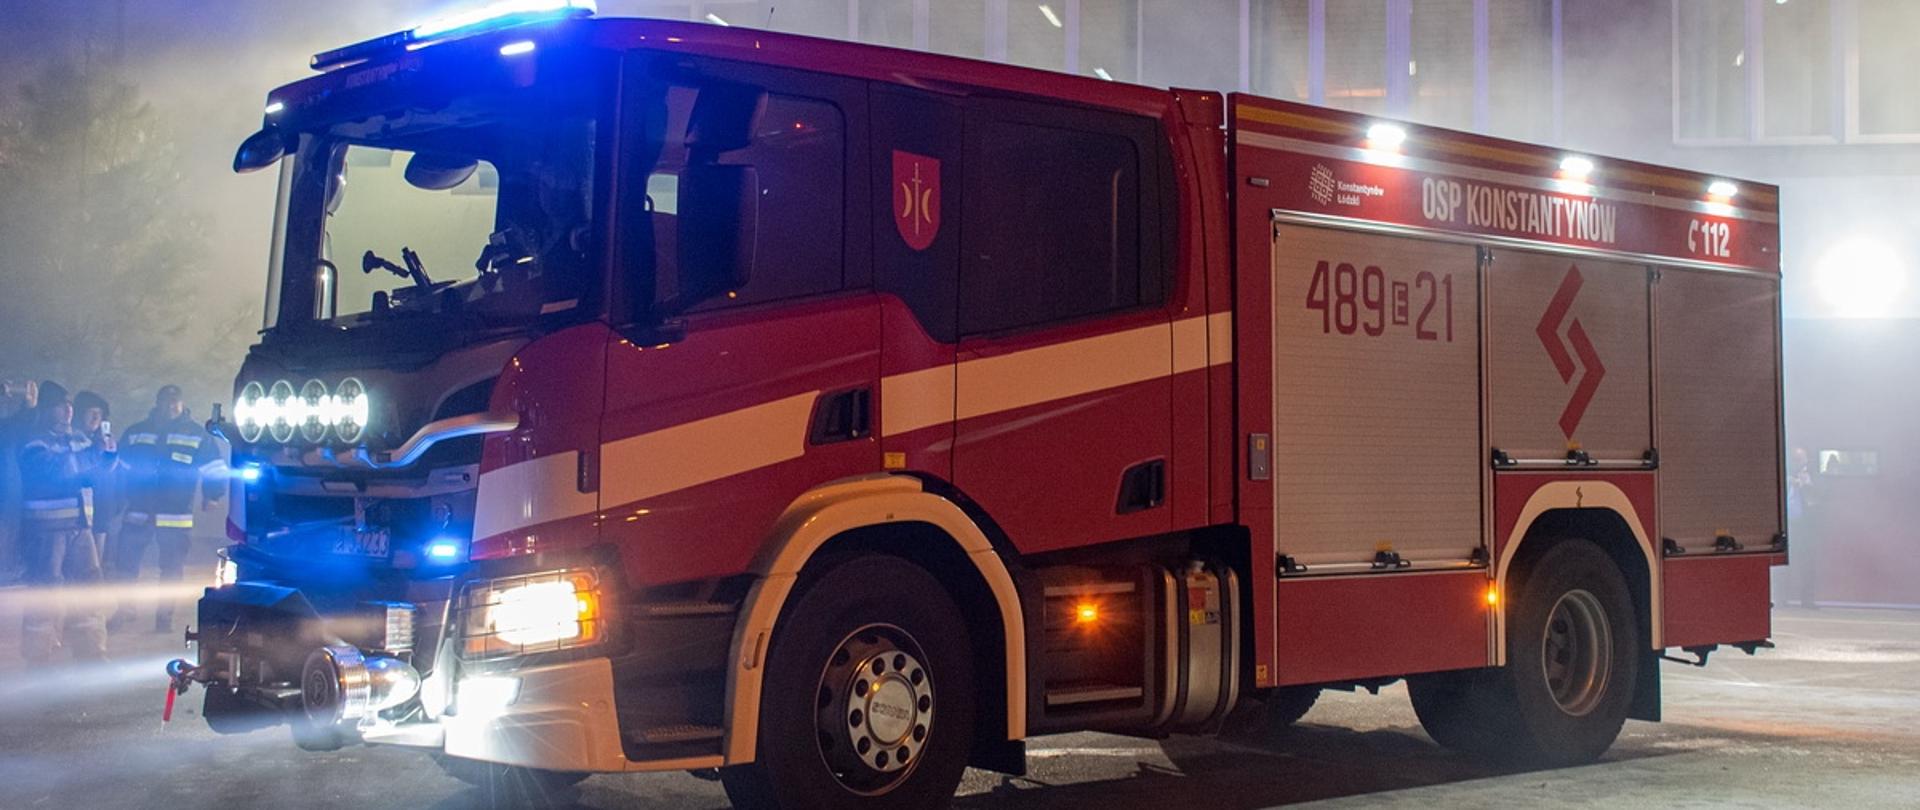 Zdjęcie zrobiono po zmroku. Przedstawia czerwony samochód strażacki z zapalonymi światłami. Wóz ratowniczo-gaśniczy. W tle budynek remizy ochotniczej straży pożarnej i grupka strażaków. Na samochodzie napis OSP Konstantynów, nr jednostki 489 21 i nr alarmowy 112